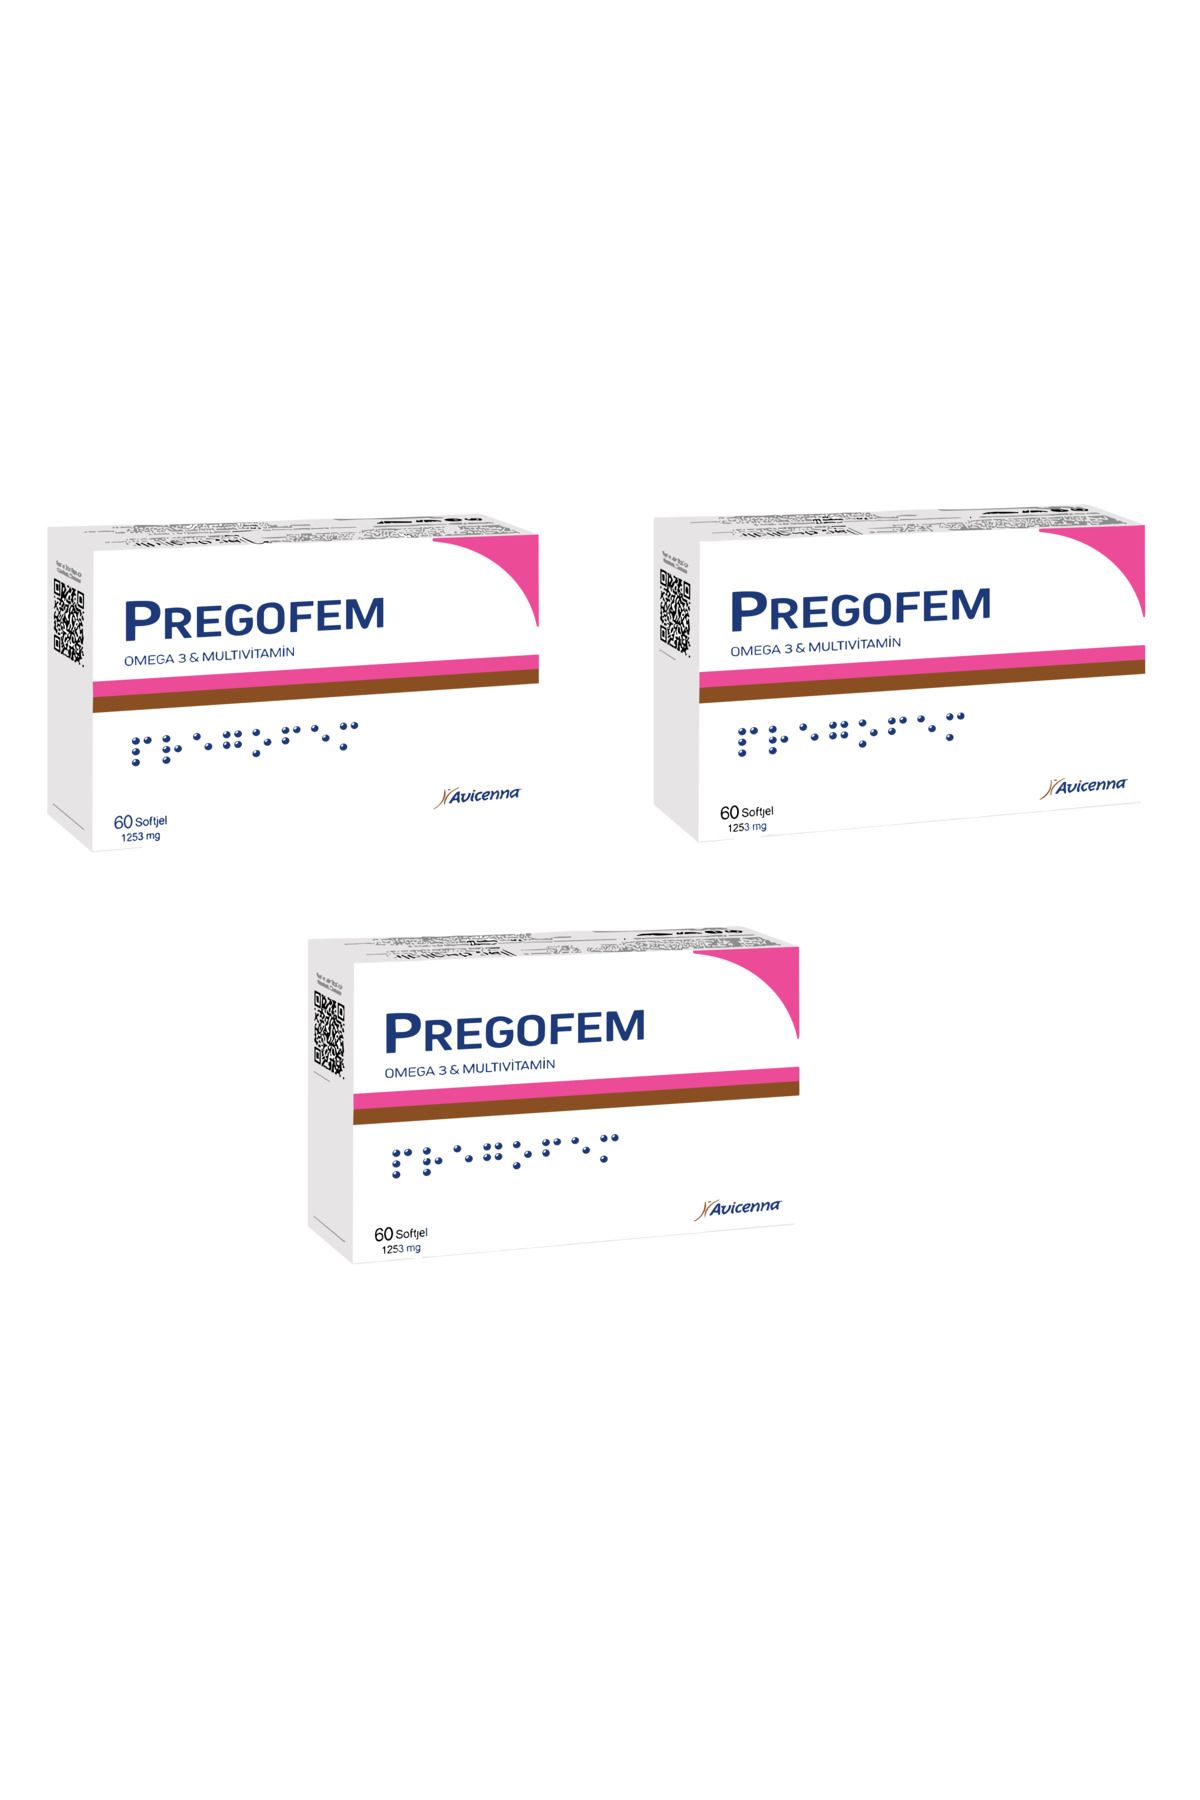 Avicenna Pregofem - Omega 3 & Multivitamin İçeren Takviye Edici Gıda - 60 Softgel Kapsül 3 Adet